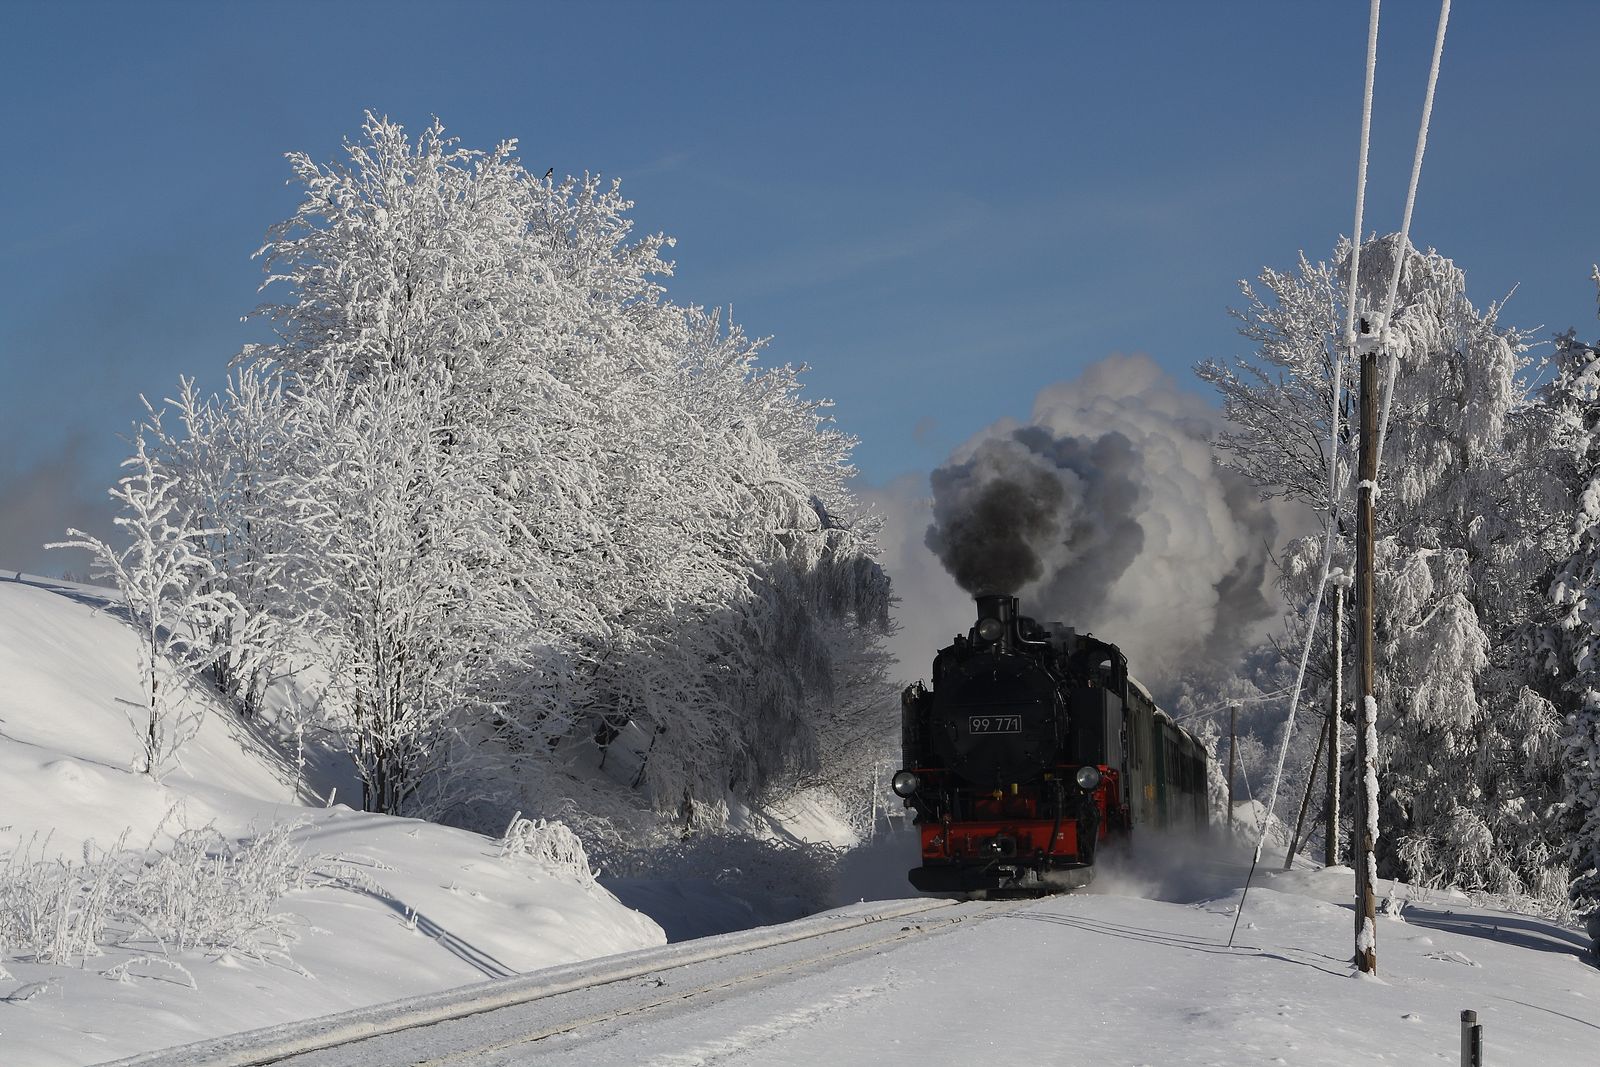 Daniel Theumer hielt am 27. Januar 2010 die winterliche Stimmung mit dem von der Stammlok der Weißeritztalbahn 99 771 gezogenen Zug auf der Fichtelbergbahn in der Nähe von Hammerunterwiesthal fest.